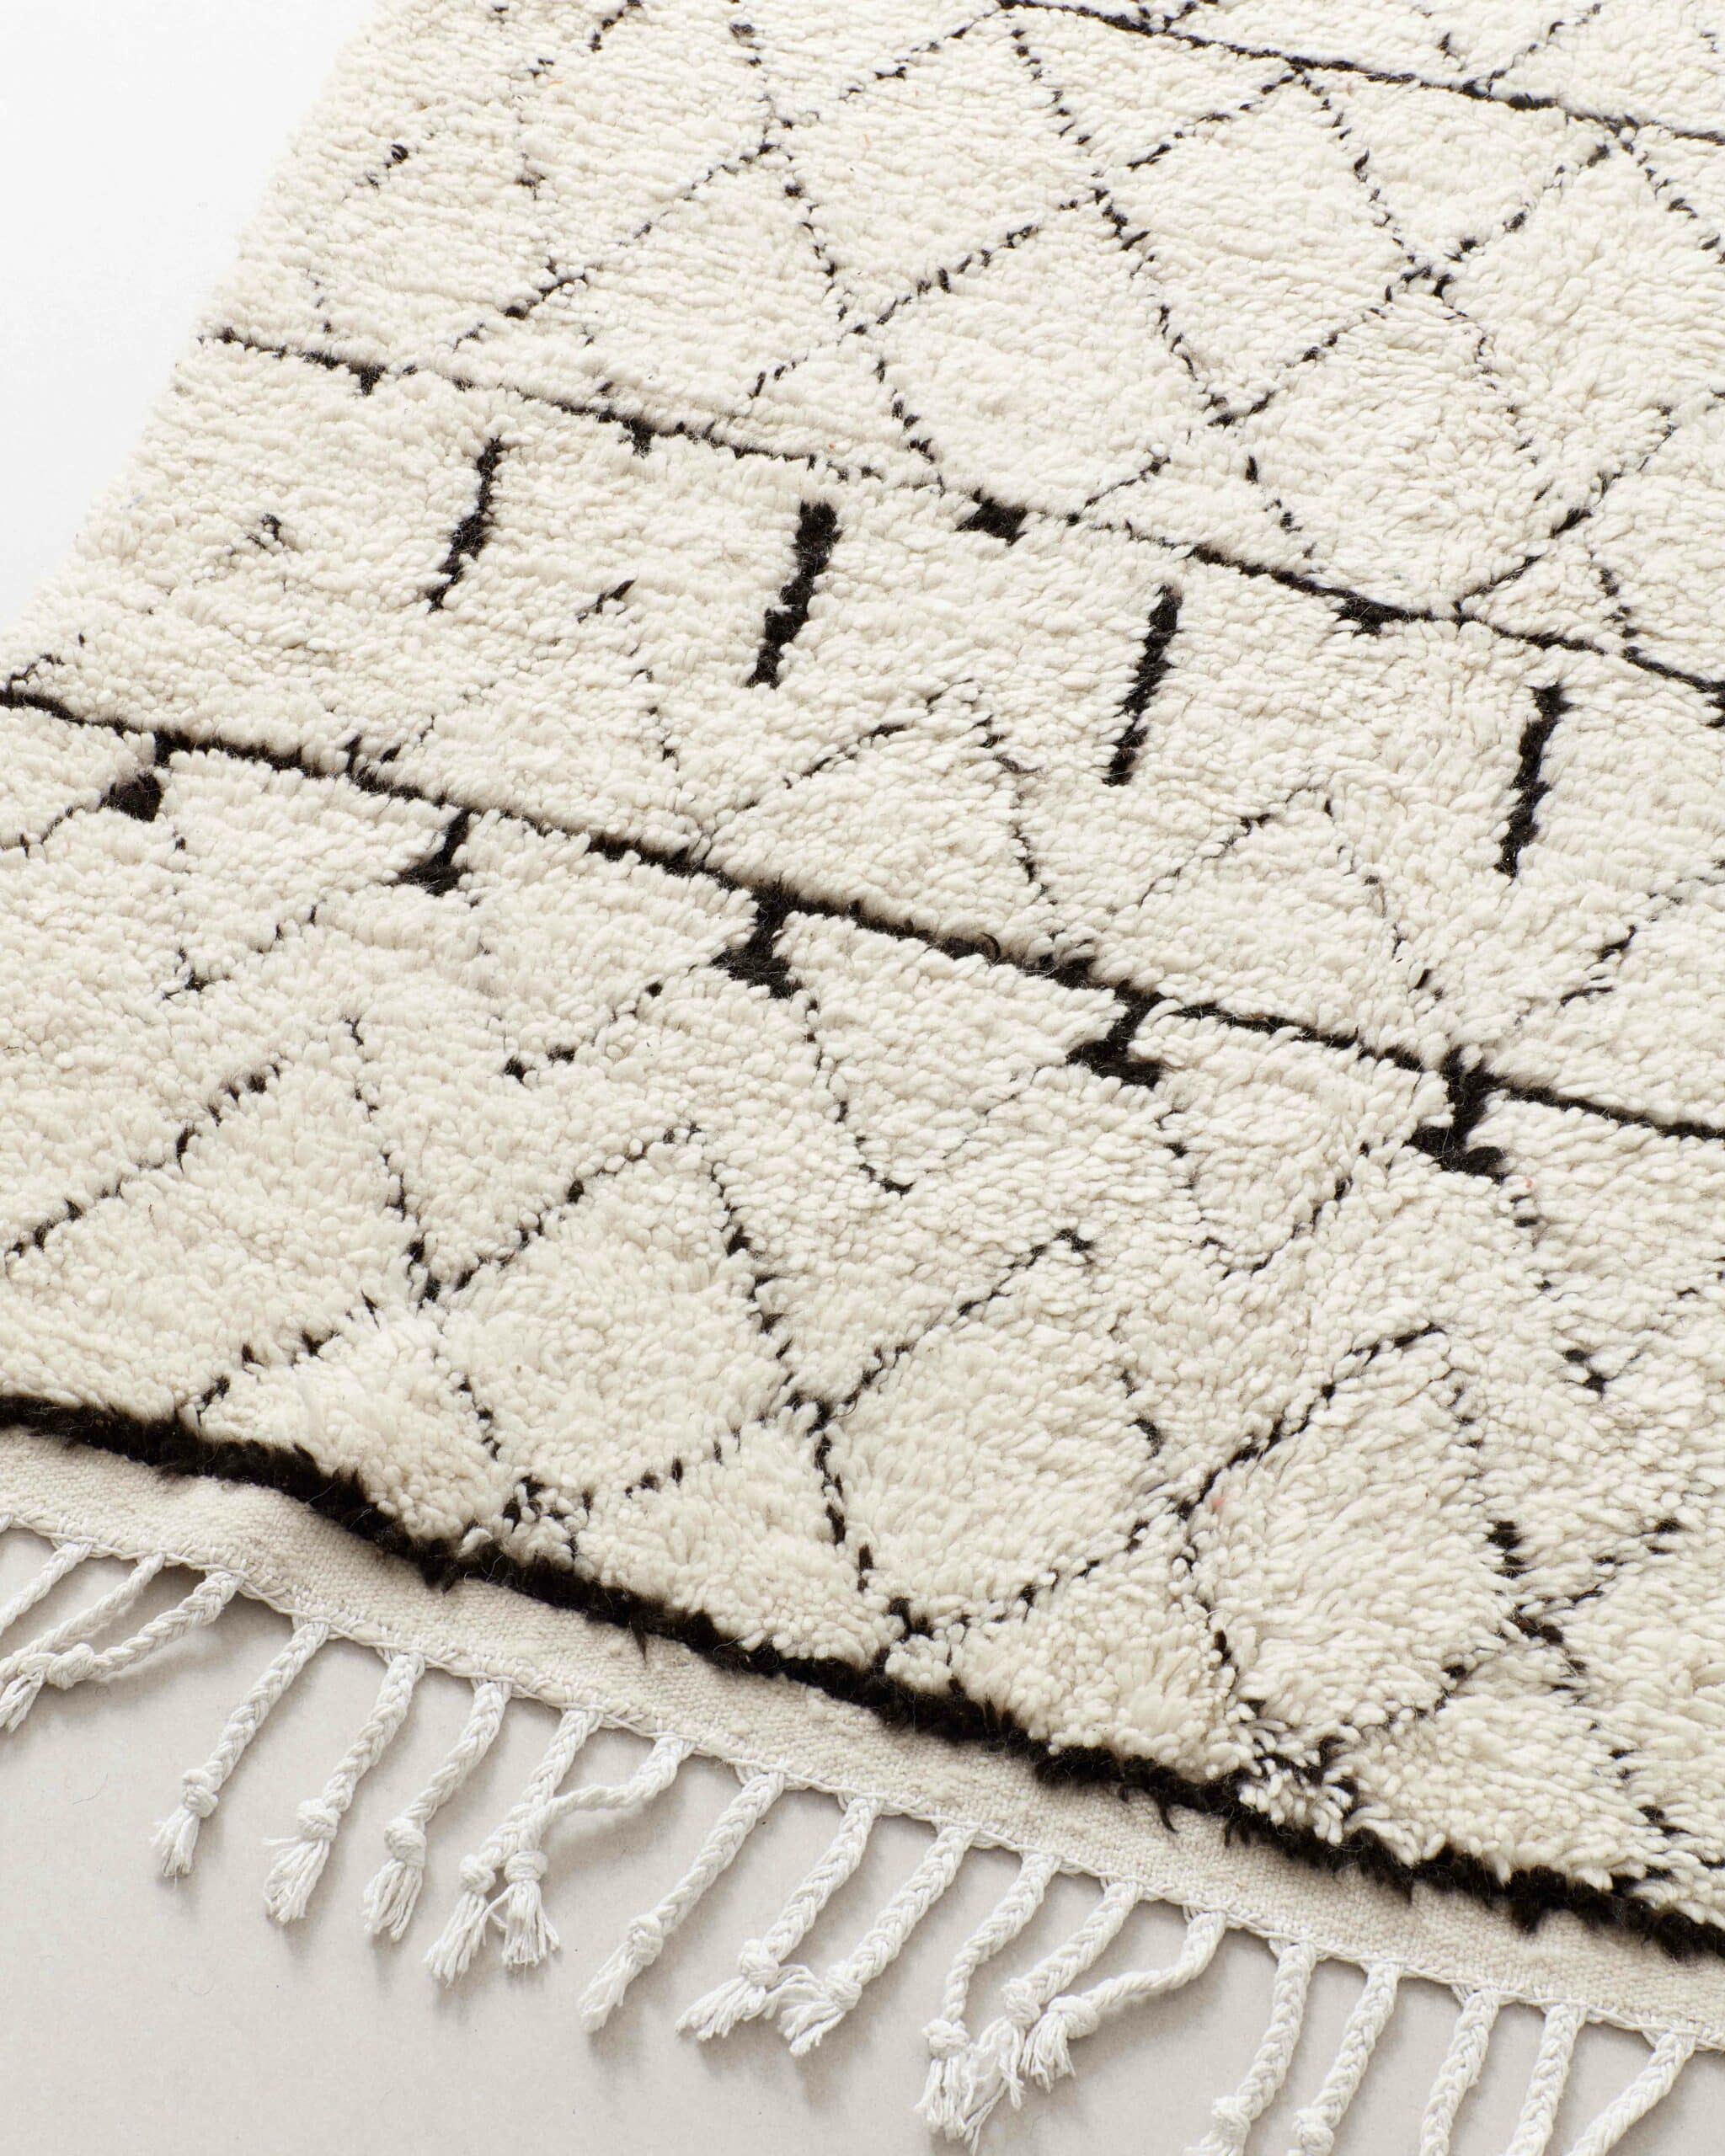 Berber rug w repeating pattern, detail